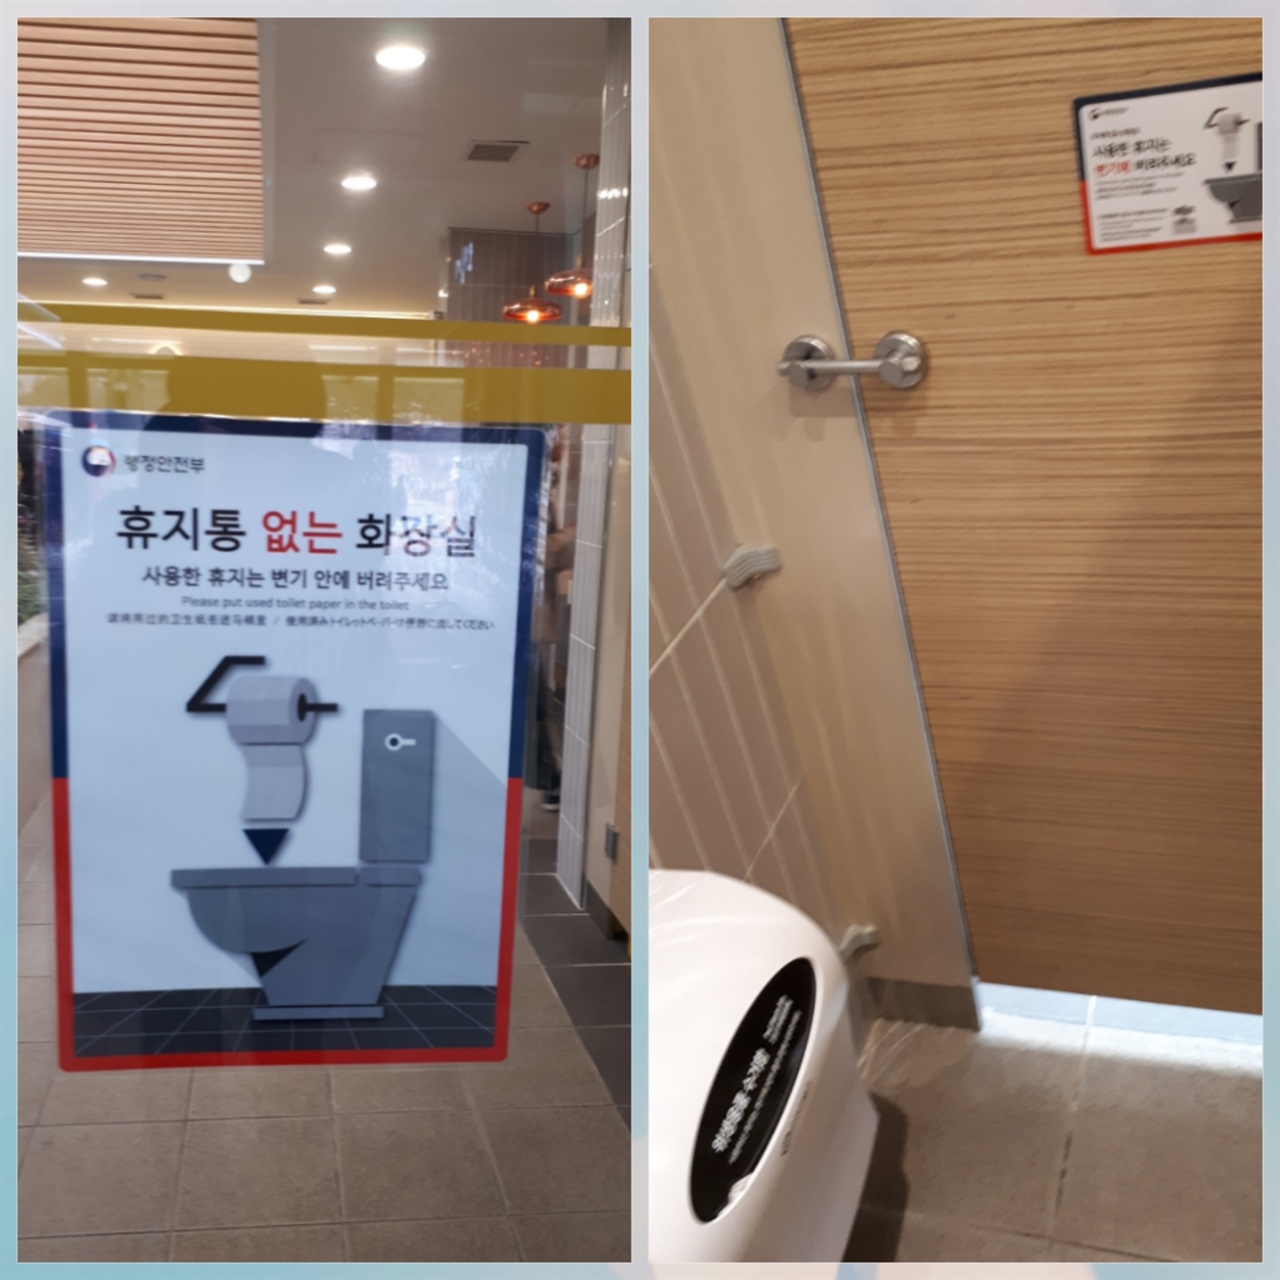 18일 방문한 서울 방면 이인휴게소의 여성화장실 출입구와 내부,  주관부서인 행정안전부 안내문을 출입구에  부착하여 알리고 있다. 내부에는 위생용품 수거함만 있을 뿐 휴지통은 없었다. 